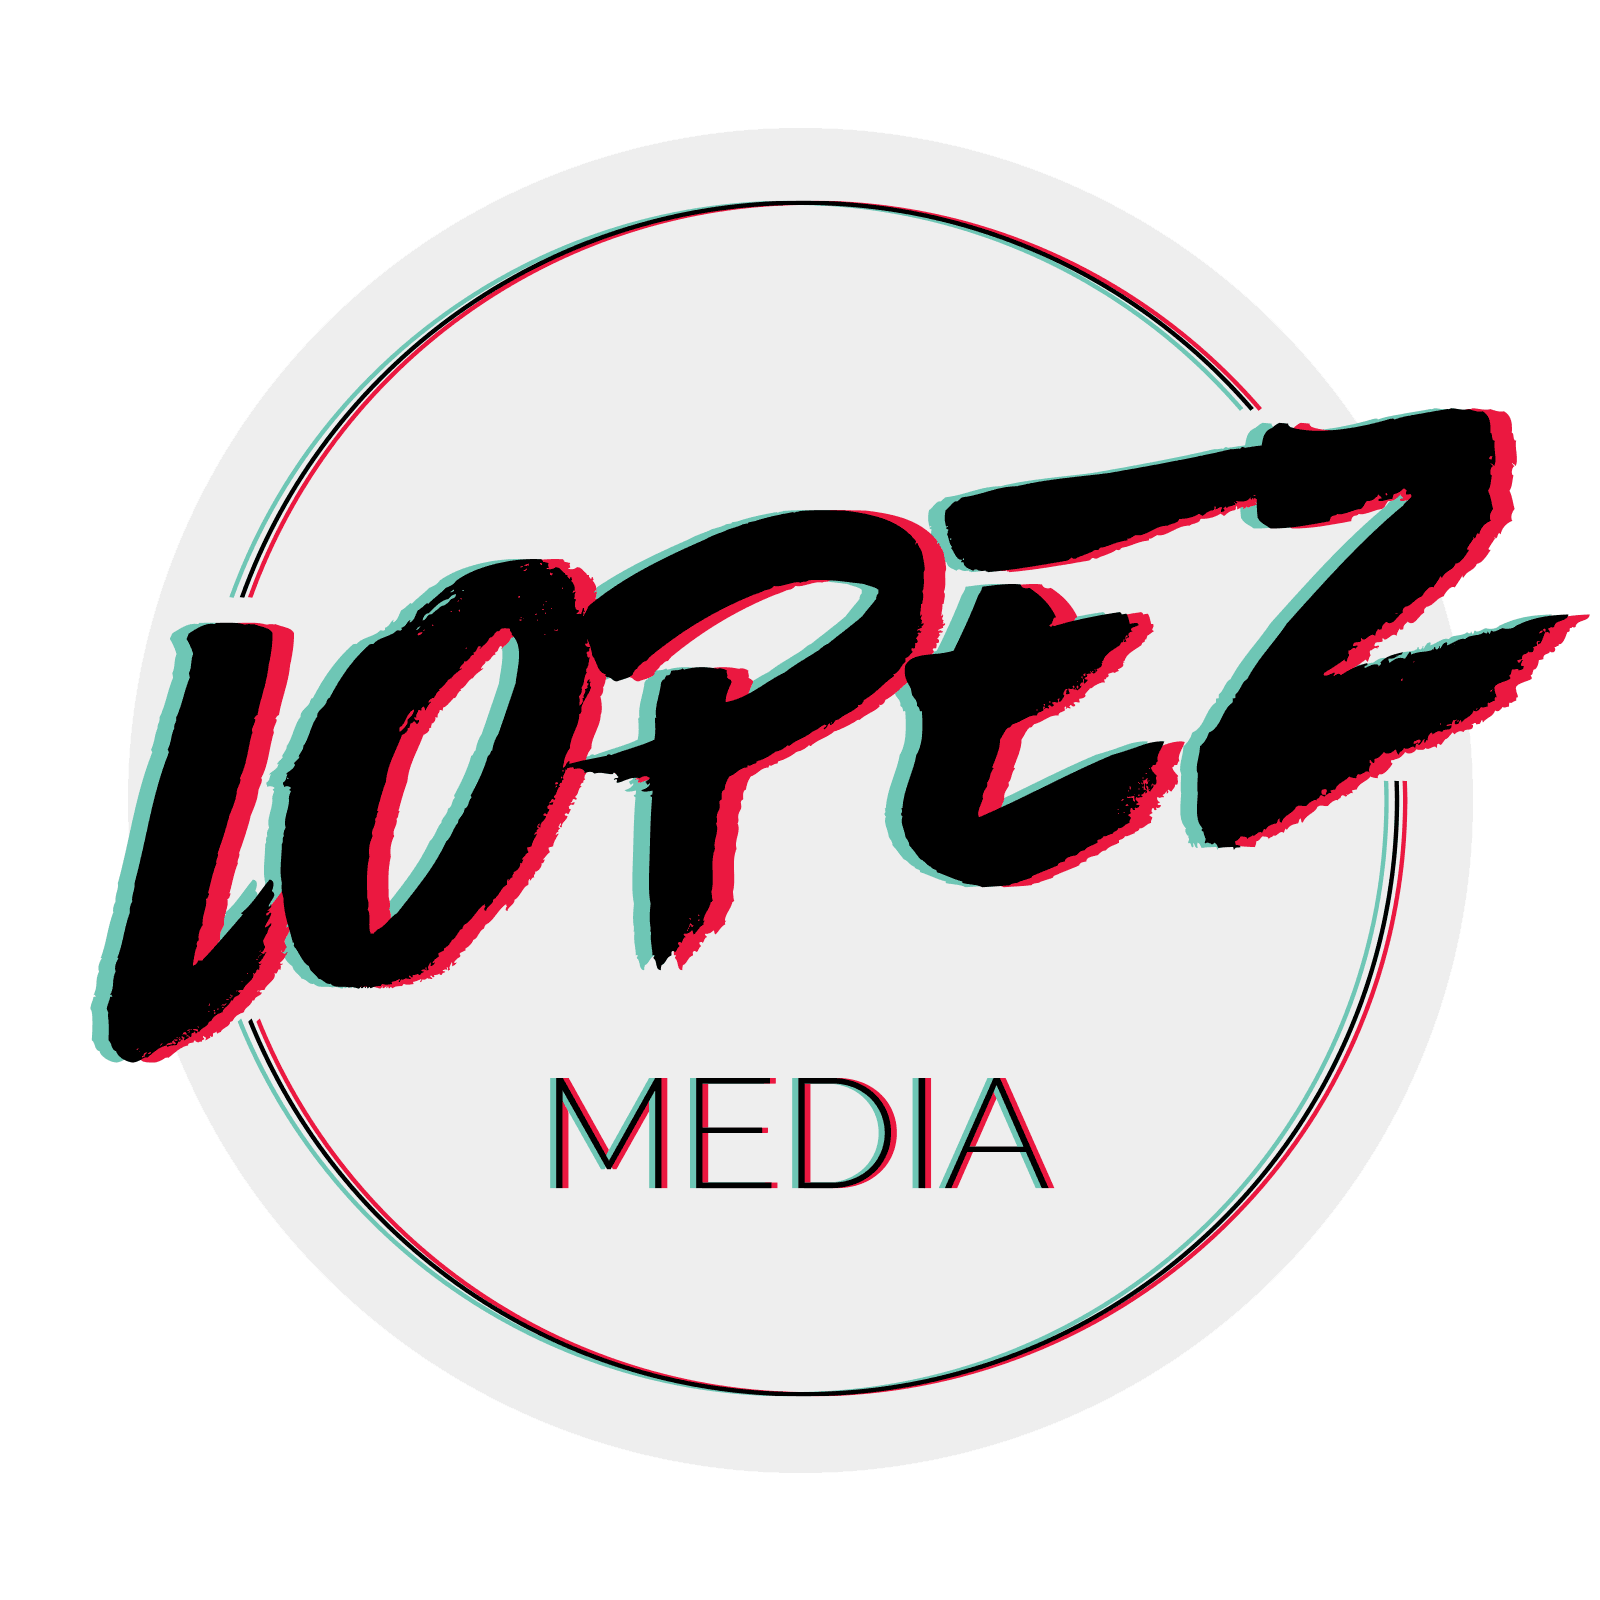 Lopez Media